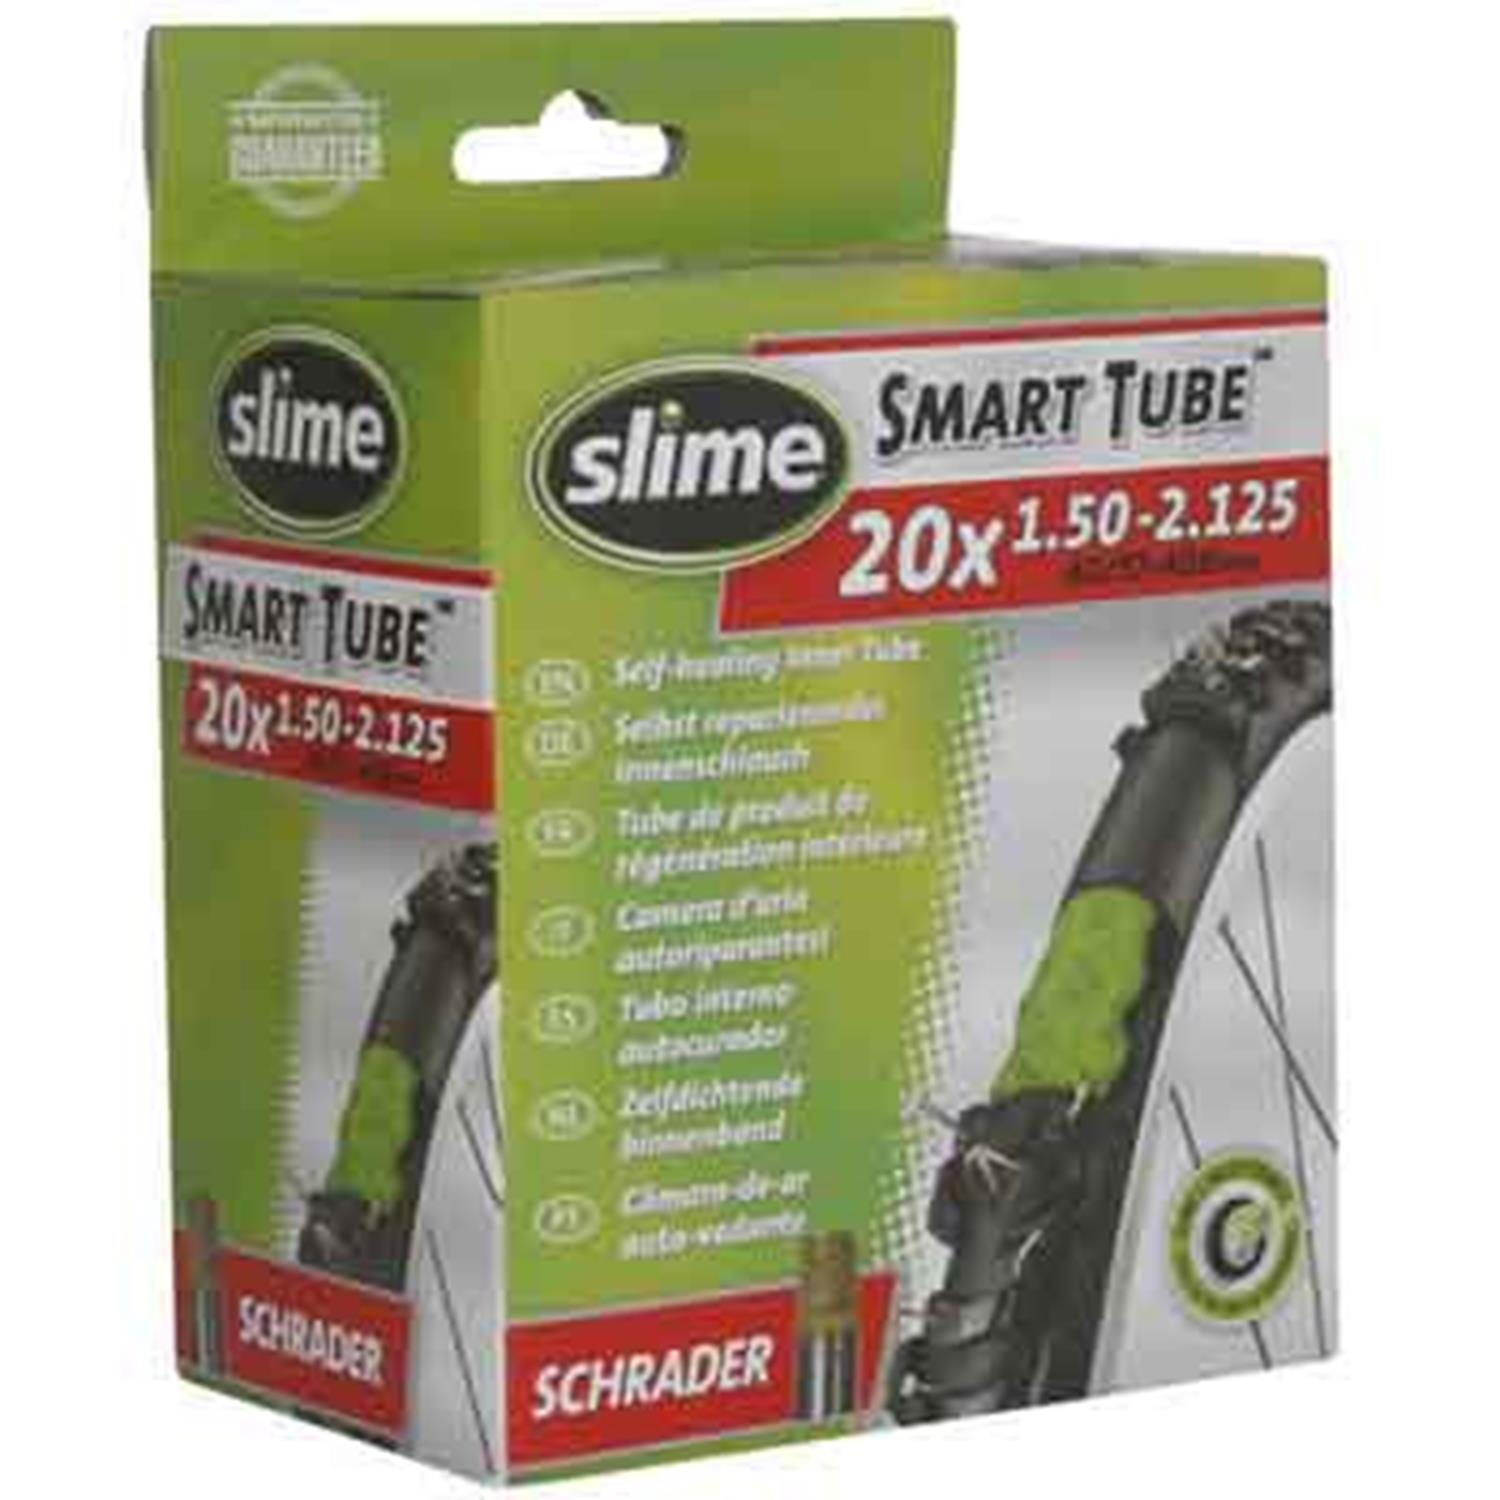 SLIME Slime Smart Tube - 20" x 1.50-2.125 - Schrader Valve